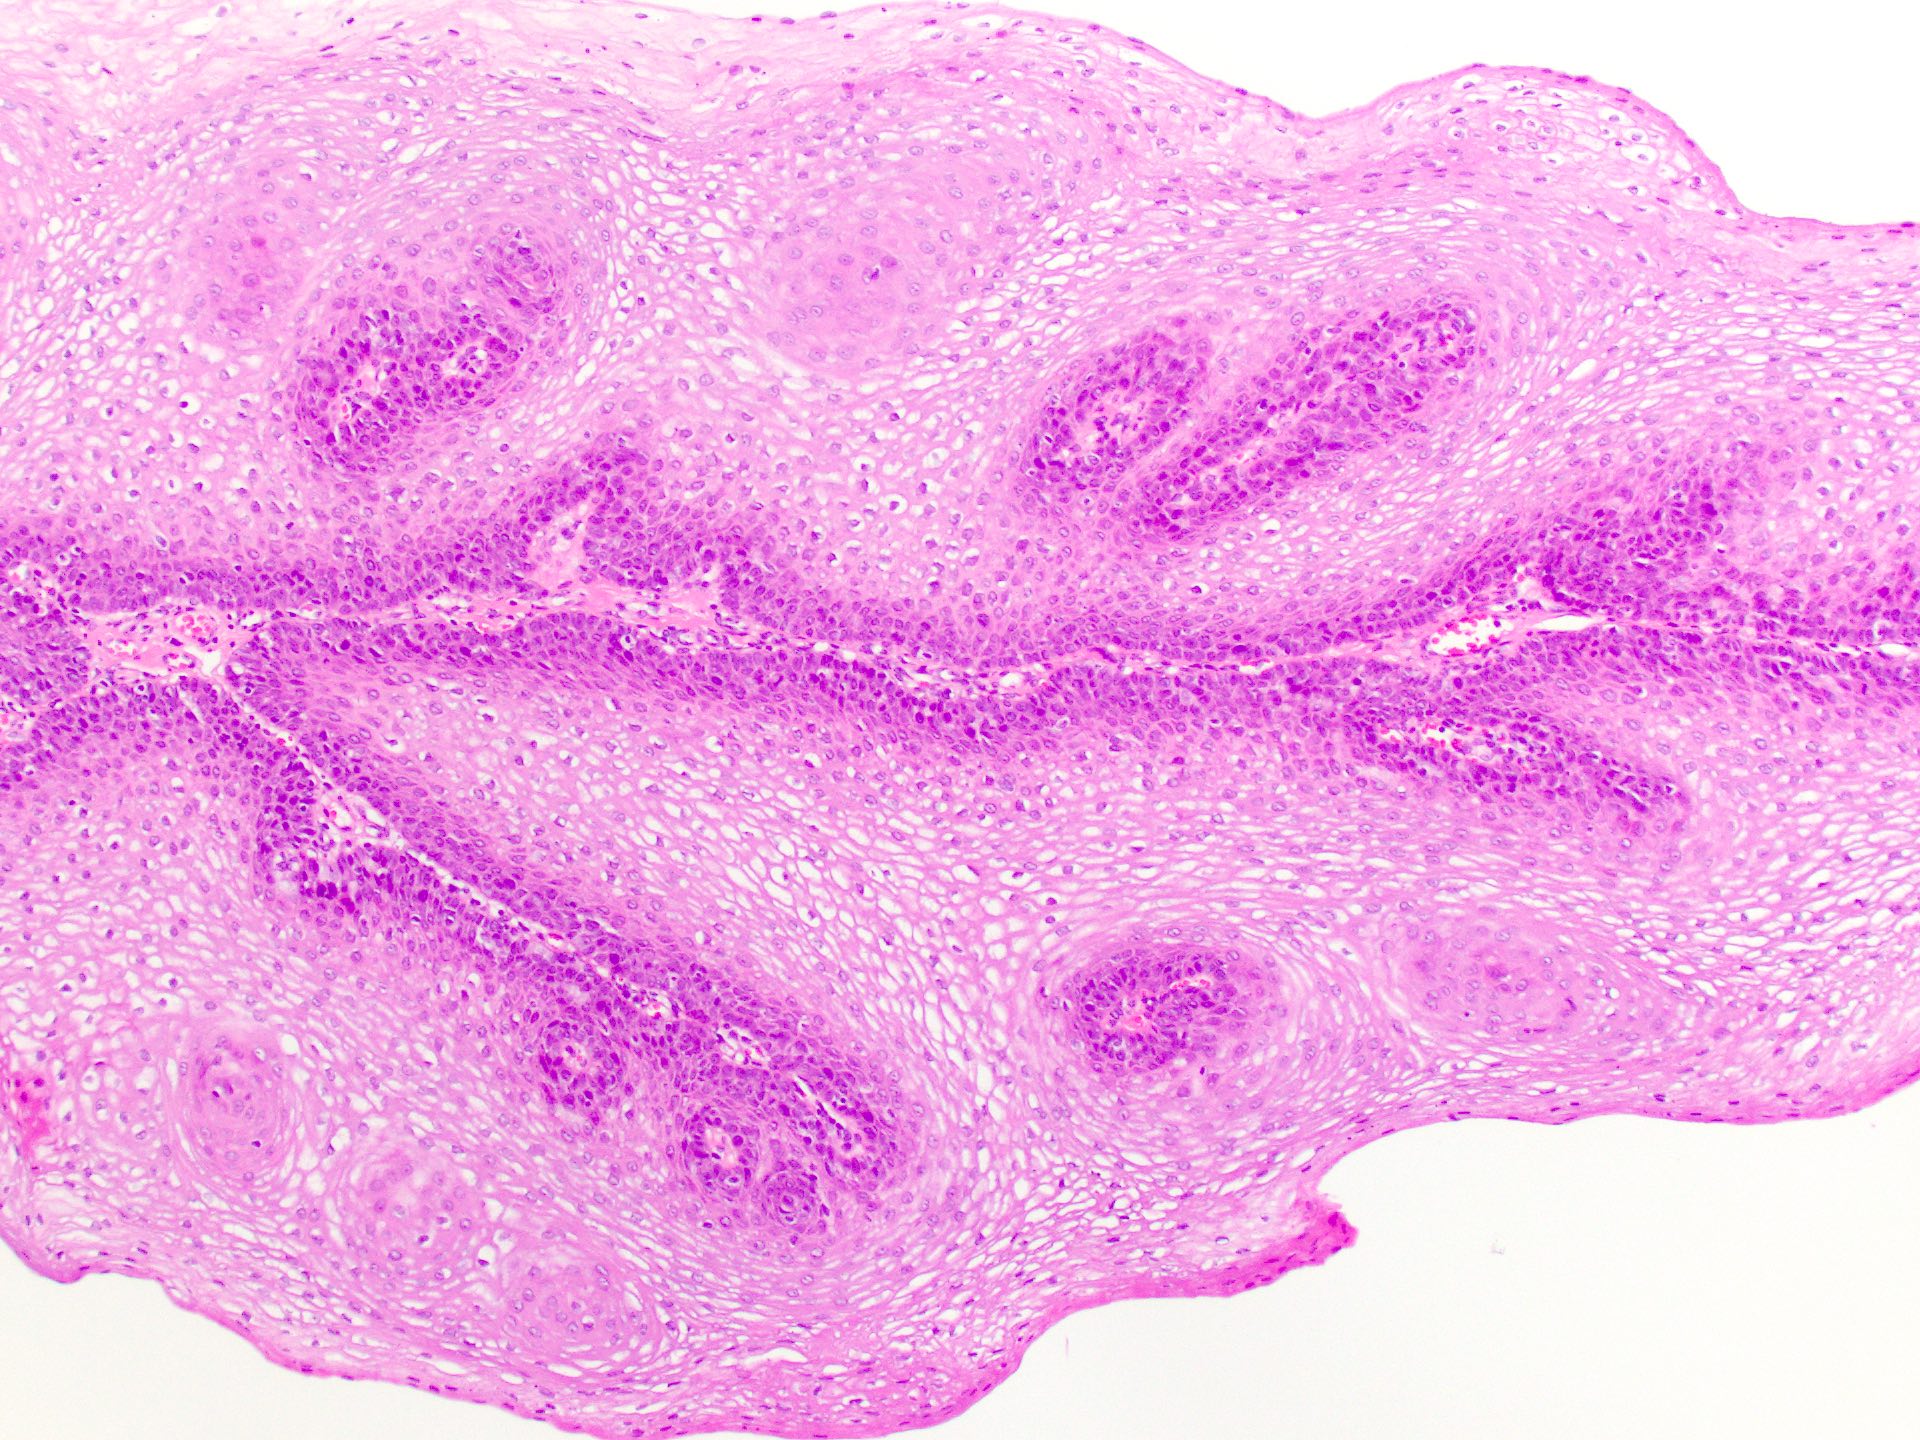 squamous papilloma uvula pathology outlines